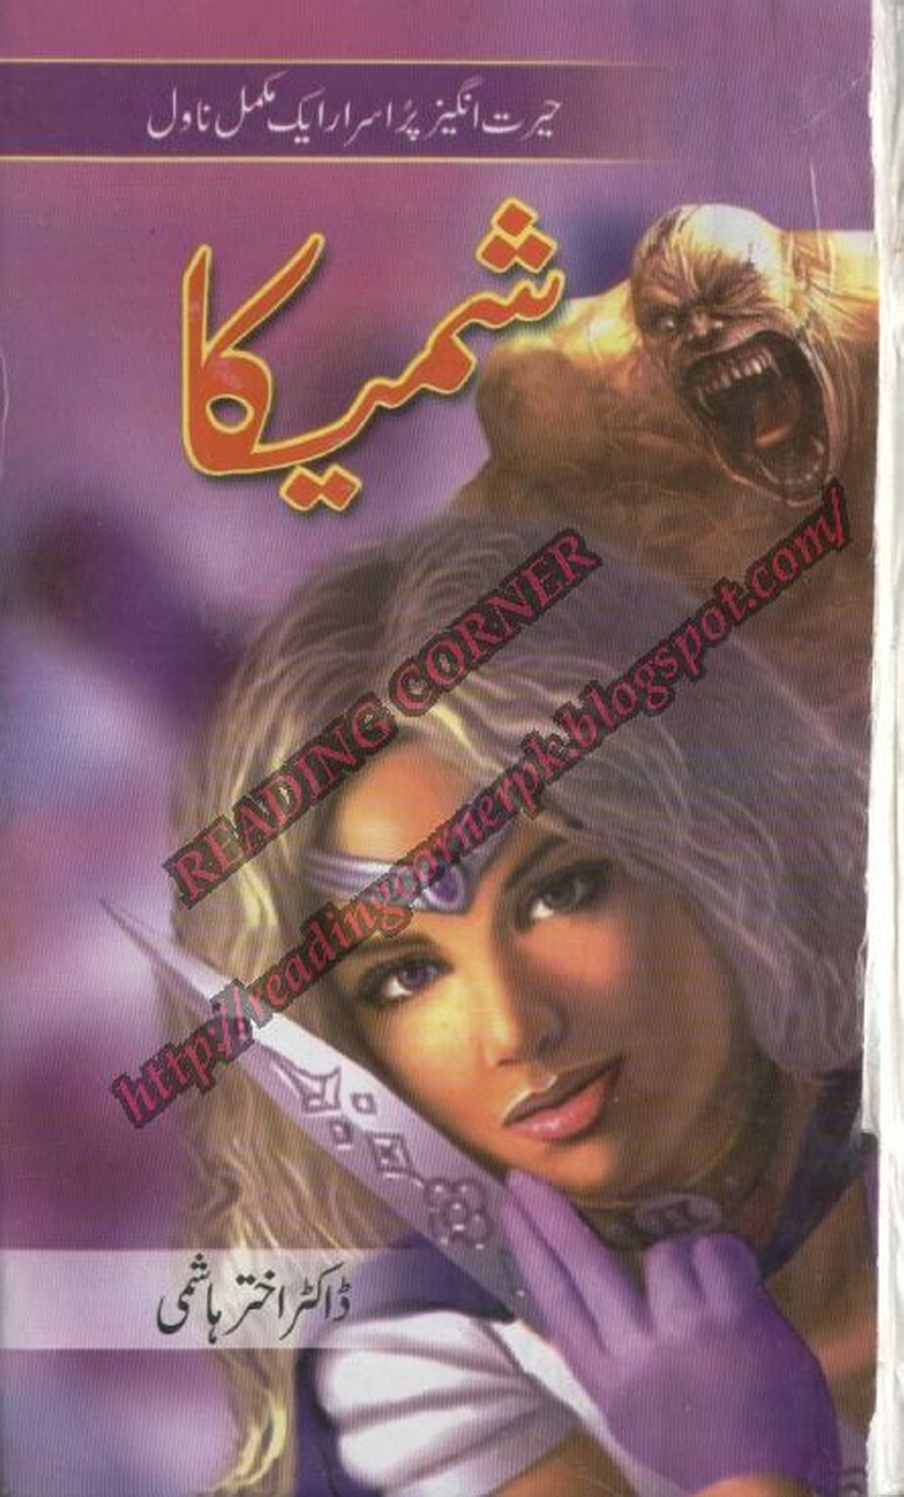 horror urdu novels for